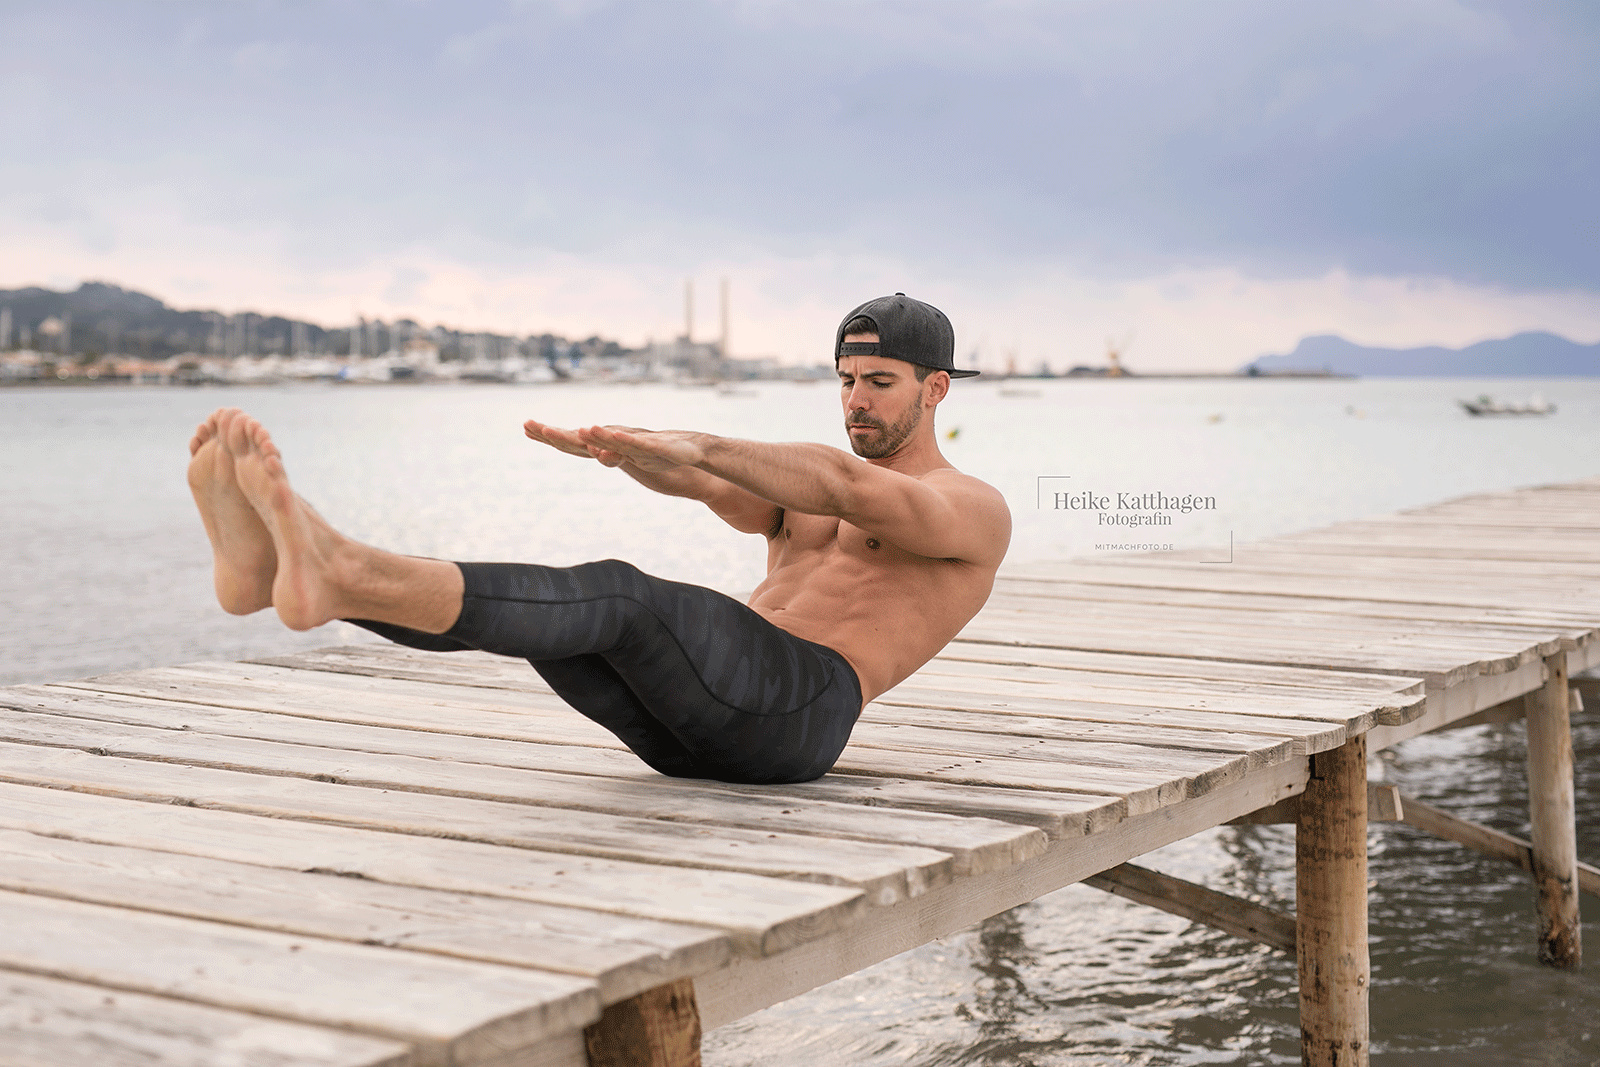 201808131046456 - 在海边健身 / 男模Florian Bornschier